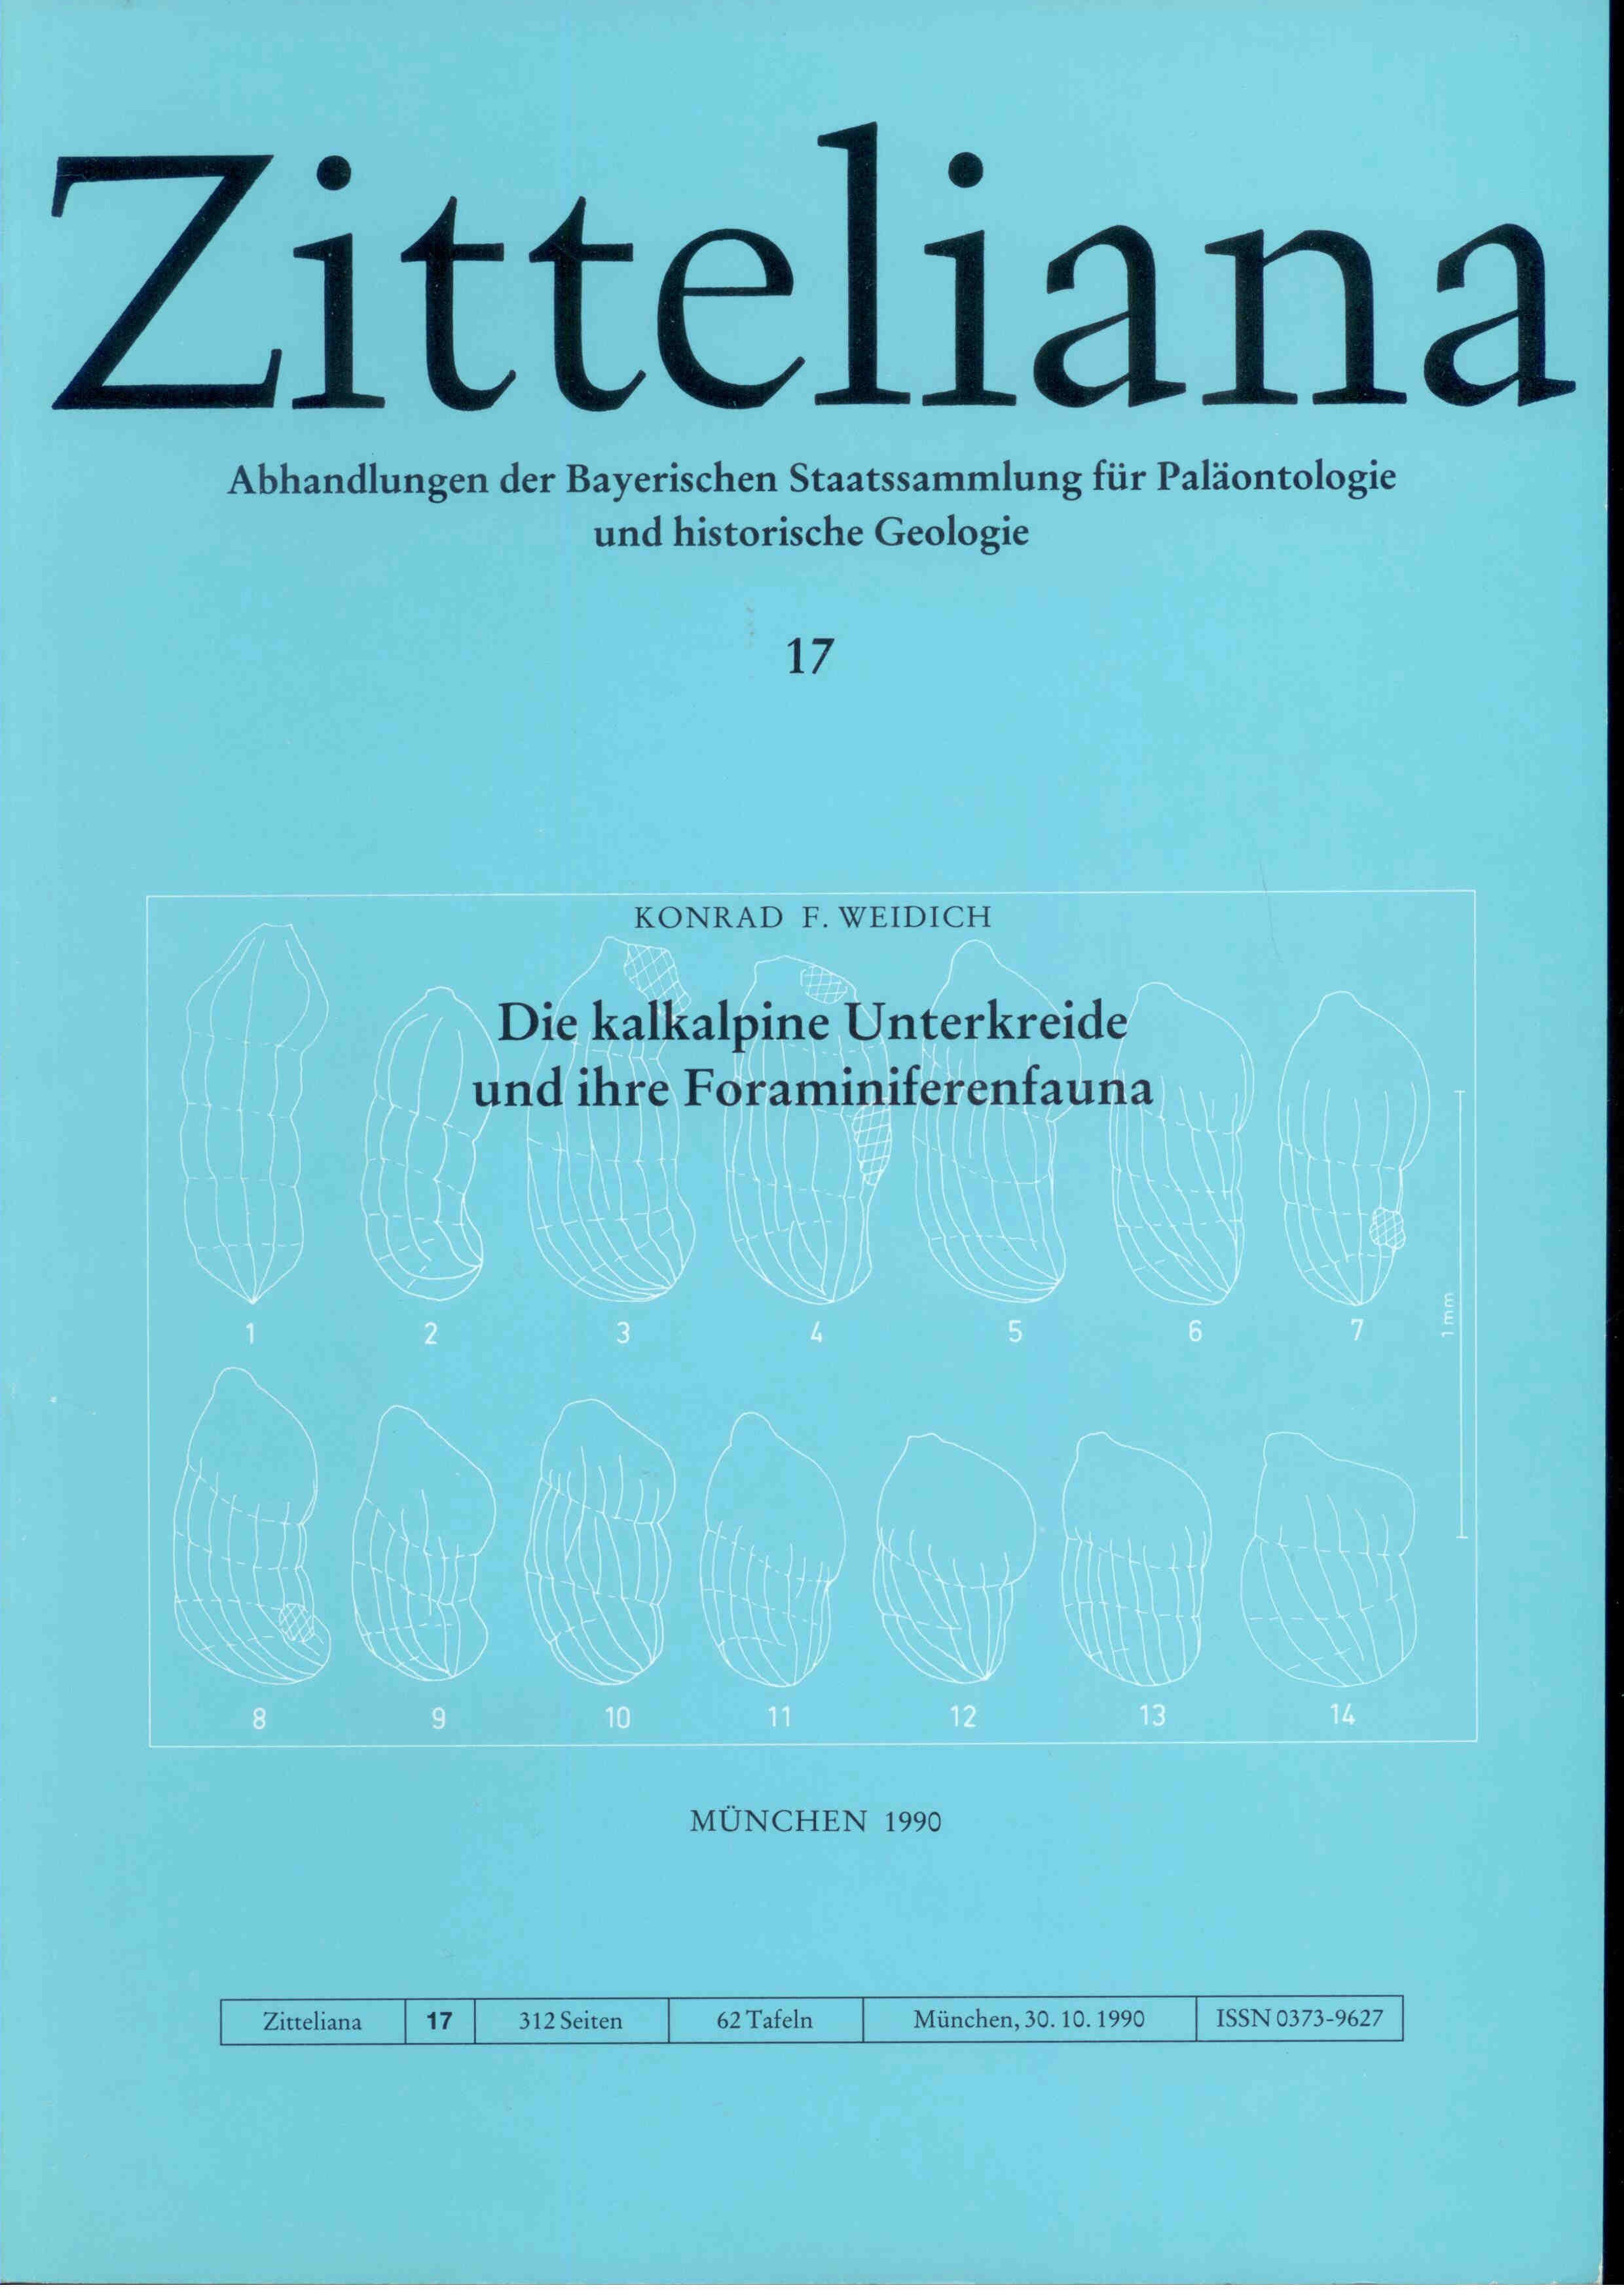 Weidlich K. F.: Die kalkalpine Unterkreide und ihre Foraminiferenfauna.  ZITTELIANA 17